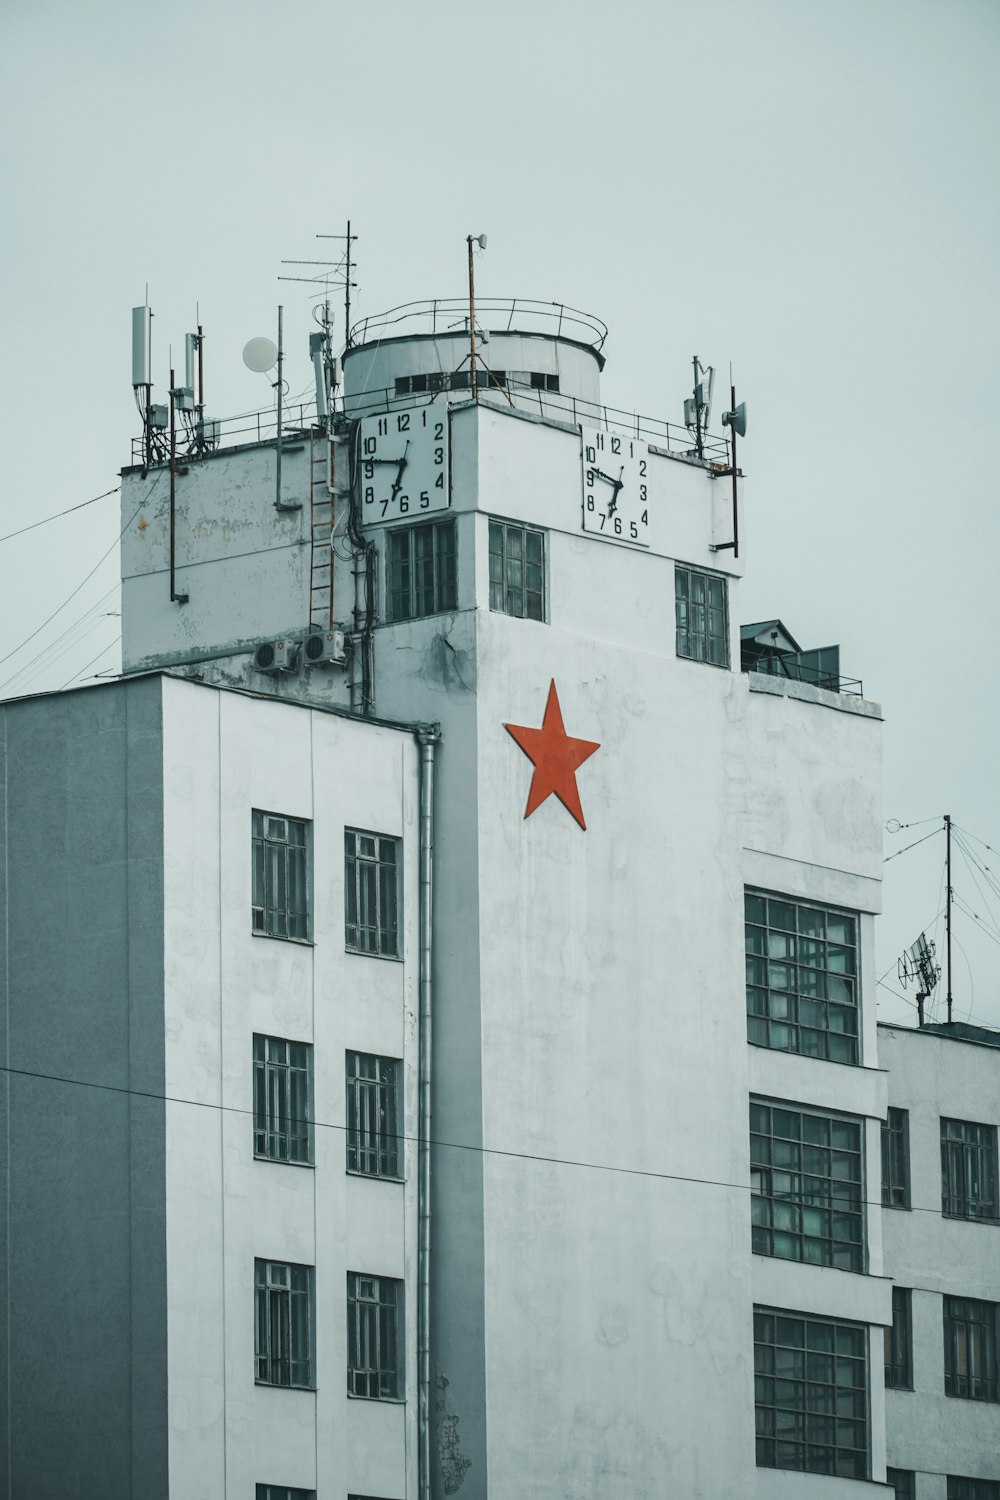 붉은 별 깃발이 있는 흰색 콘크리트 건물